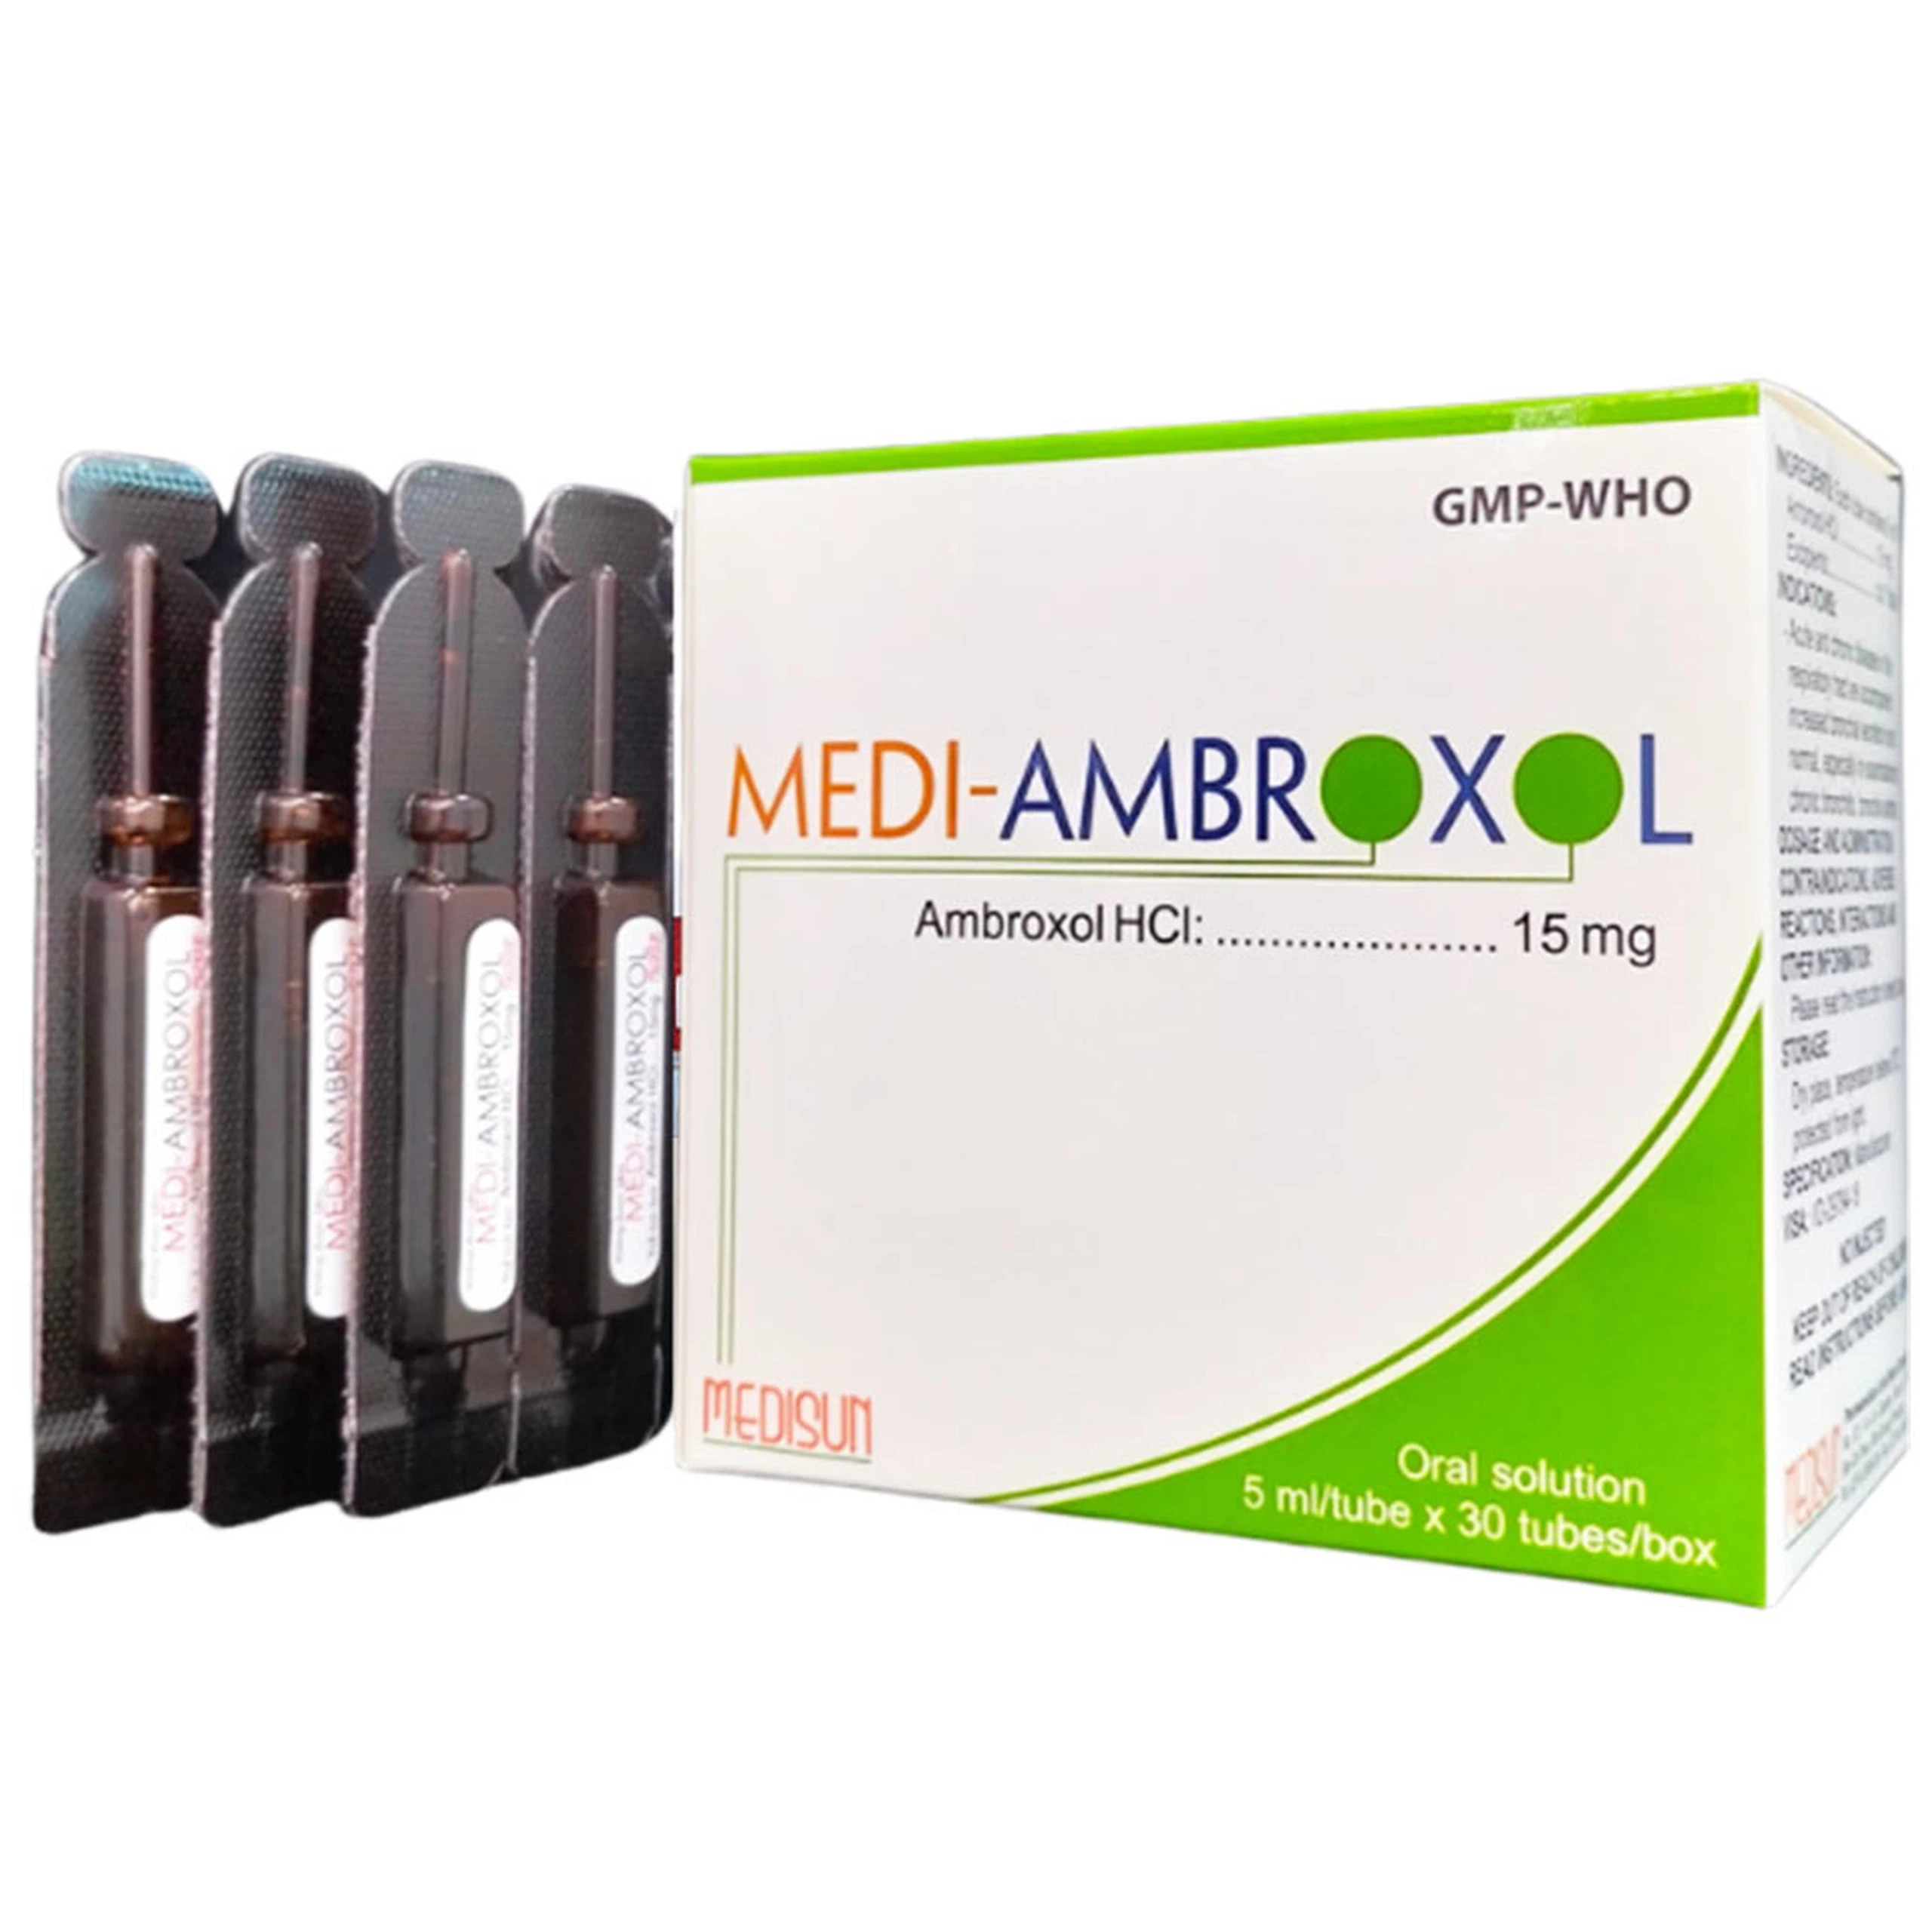 Thuốc Medi-Ambroxol Medisun tiêu chất nhầy đường hô hấp (30 ống x 5ml)